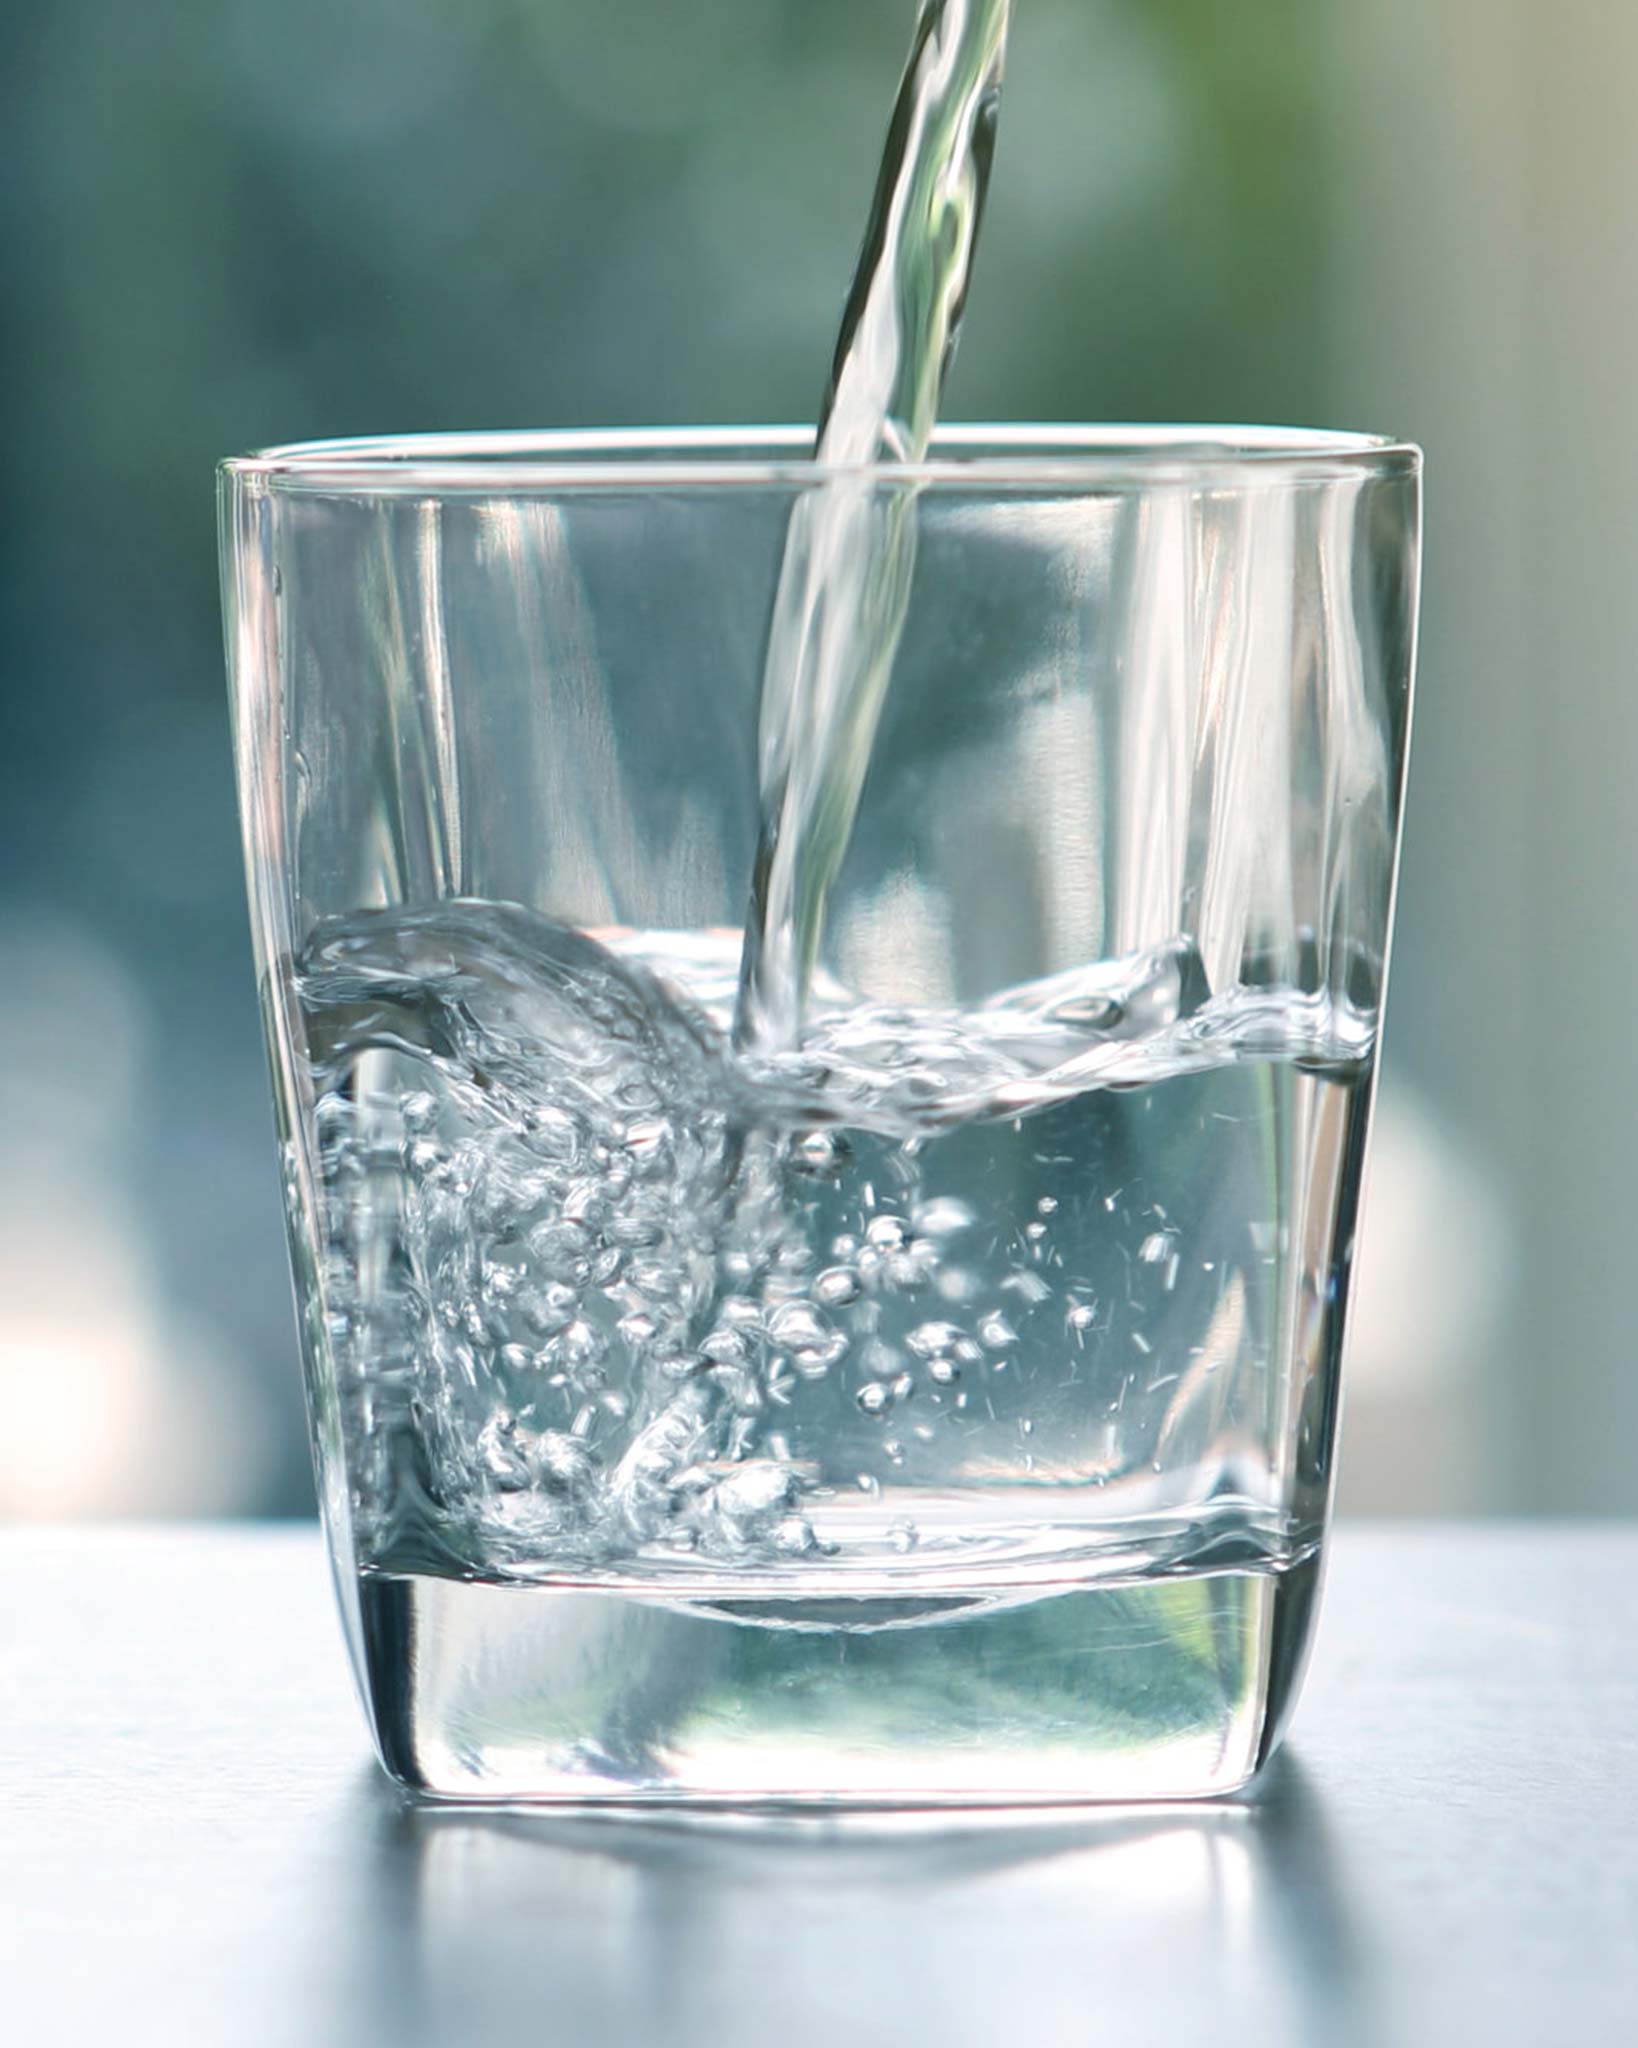 Glas med rent vatten för vattenrening